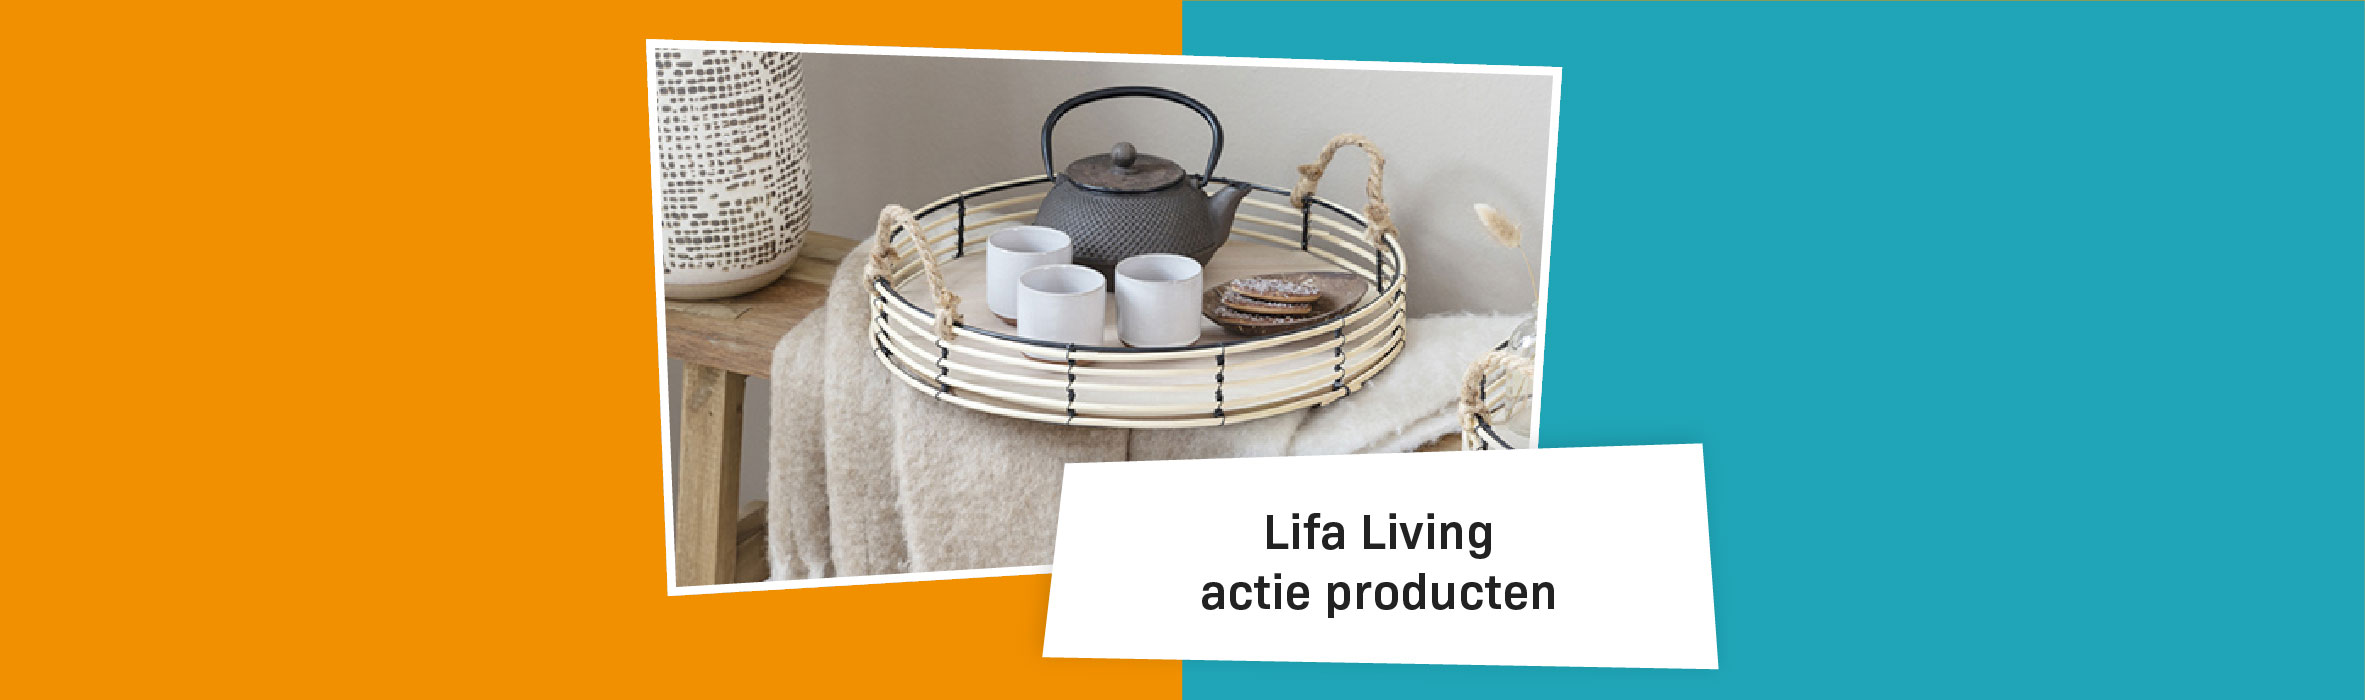 Lifa Living Actie Producten